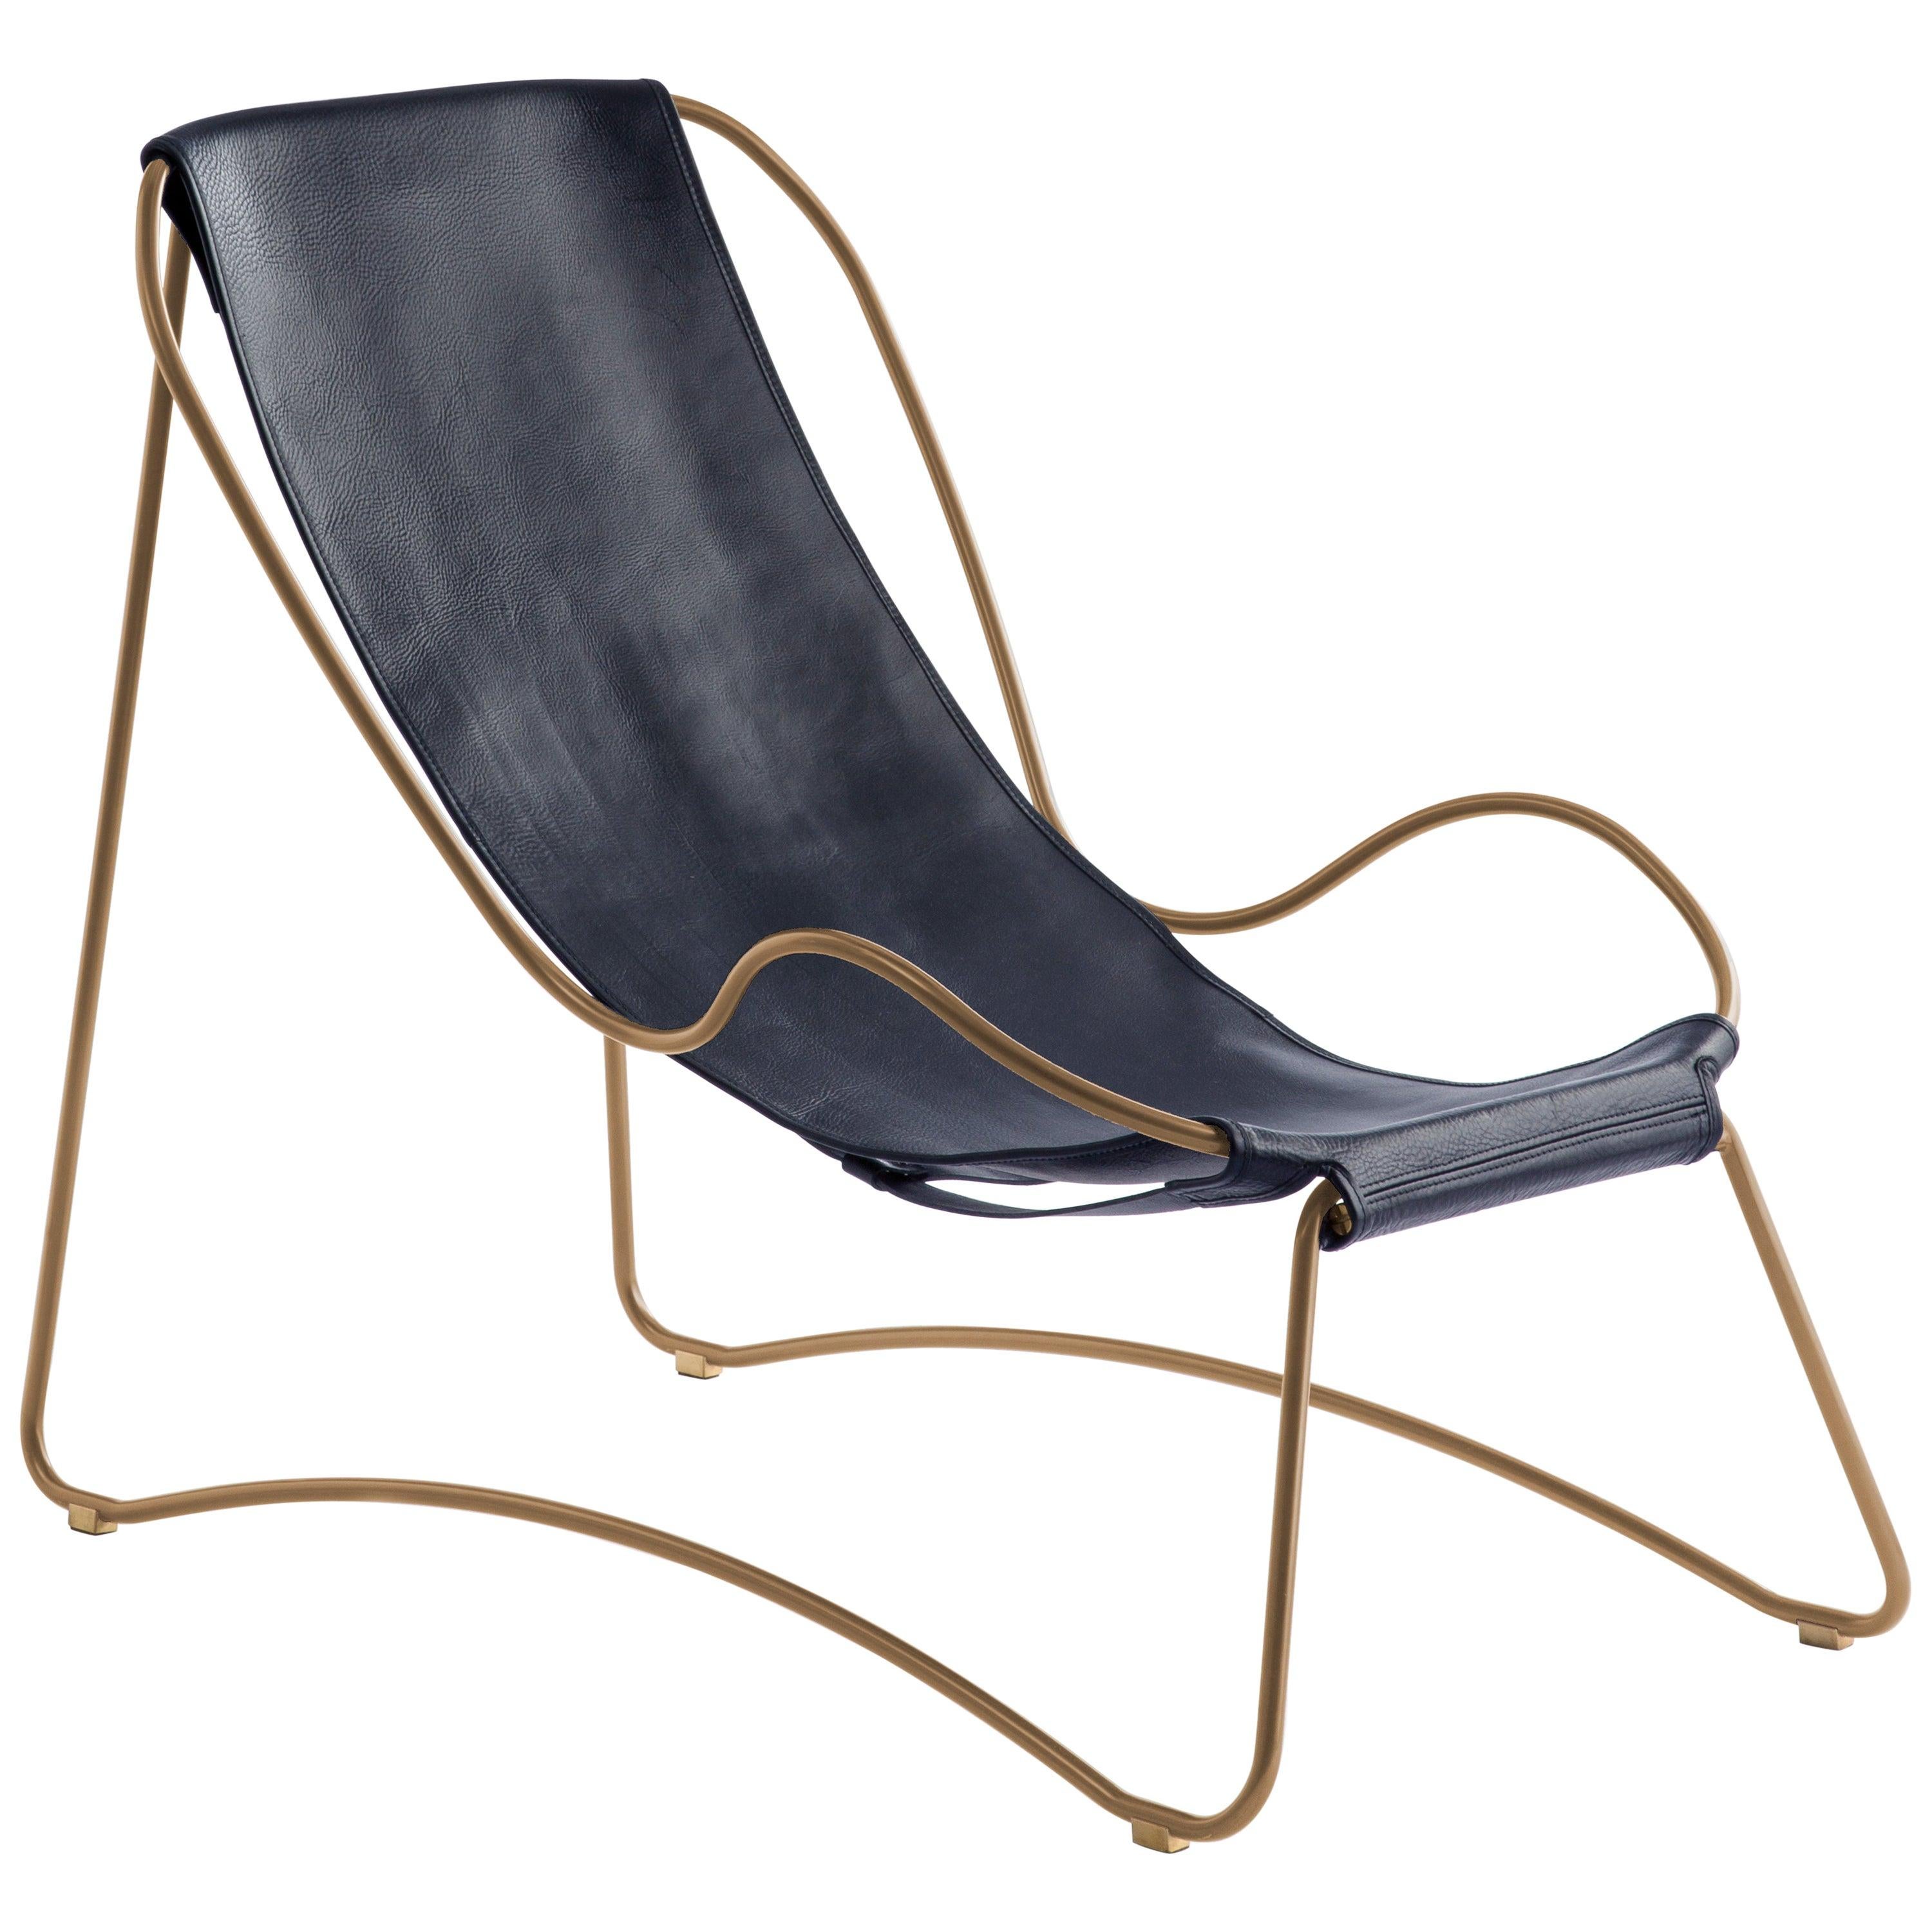 Chaise longue contemporaine sculpturale en métal laiton vieilli, échantillon de cuir bleu marine